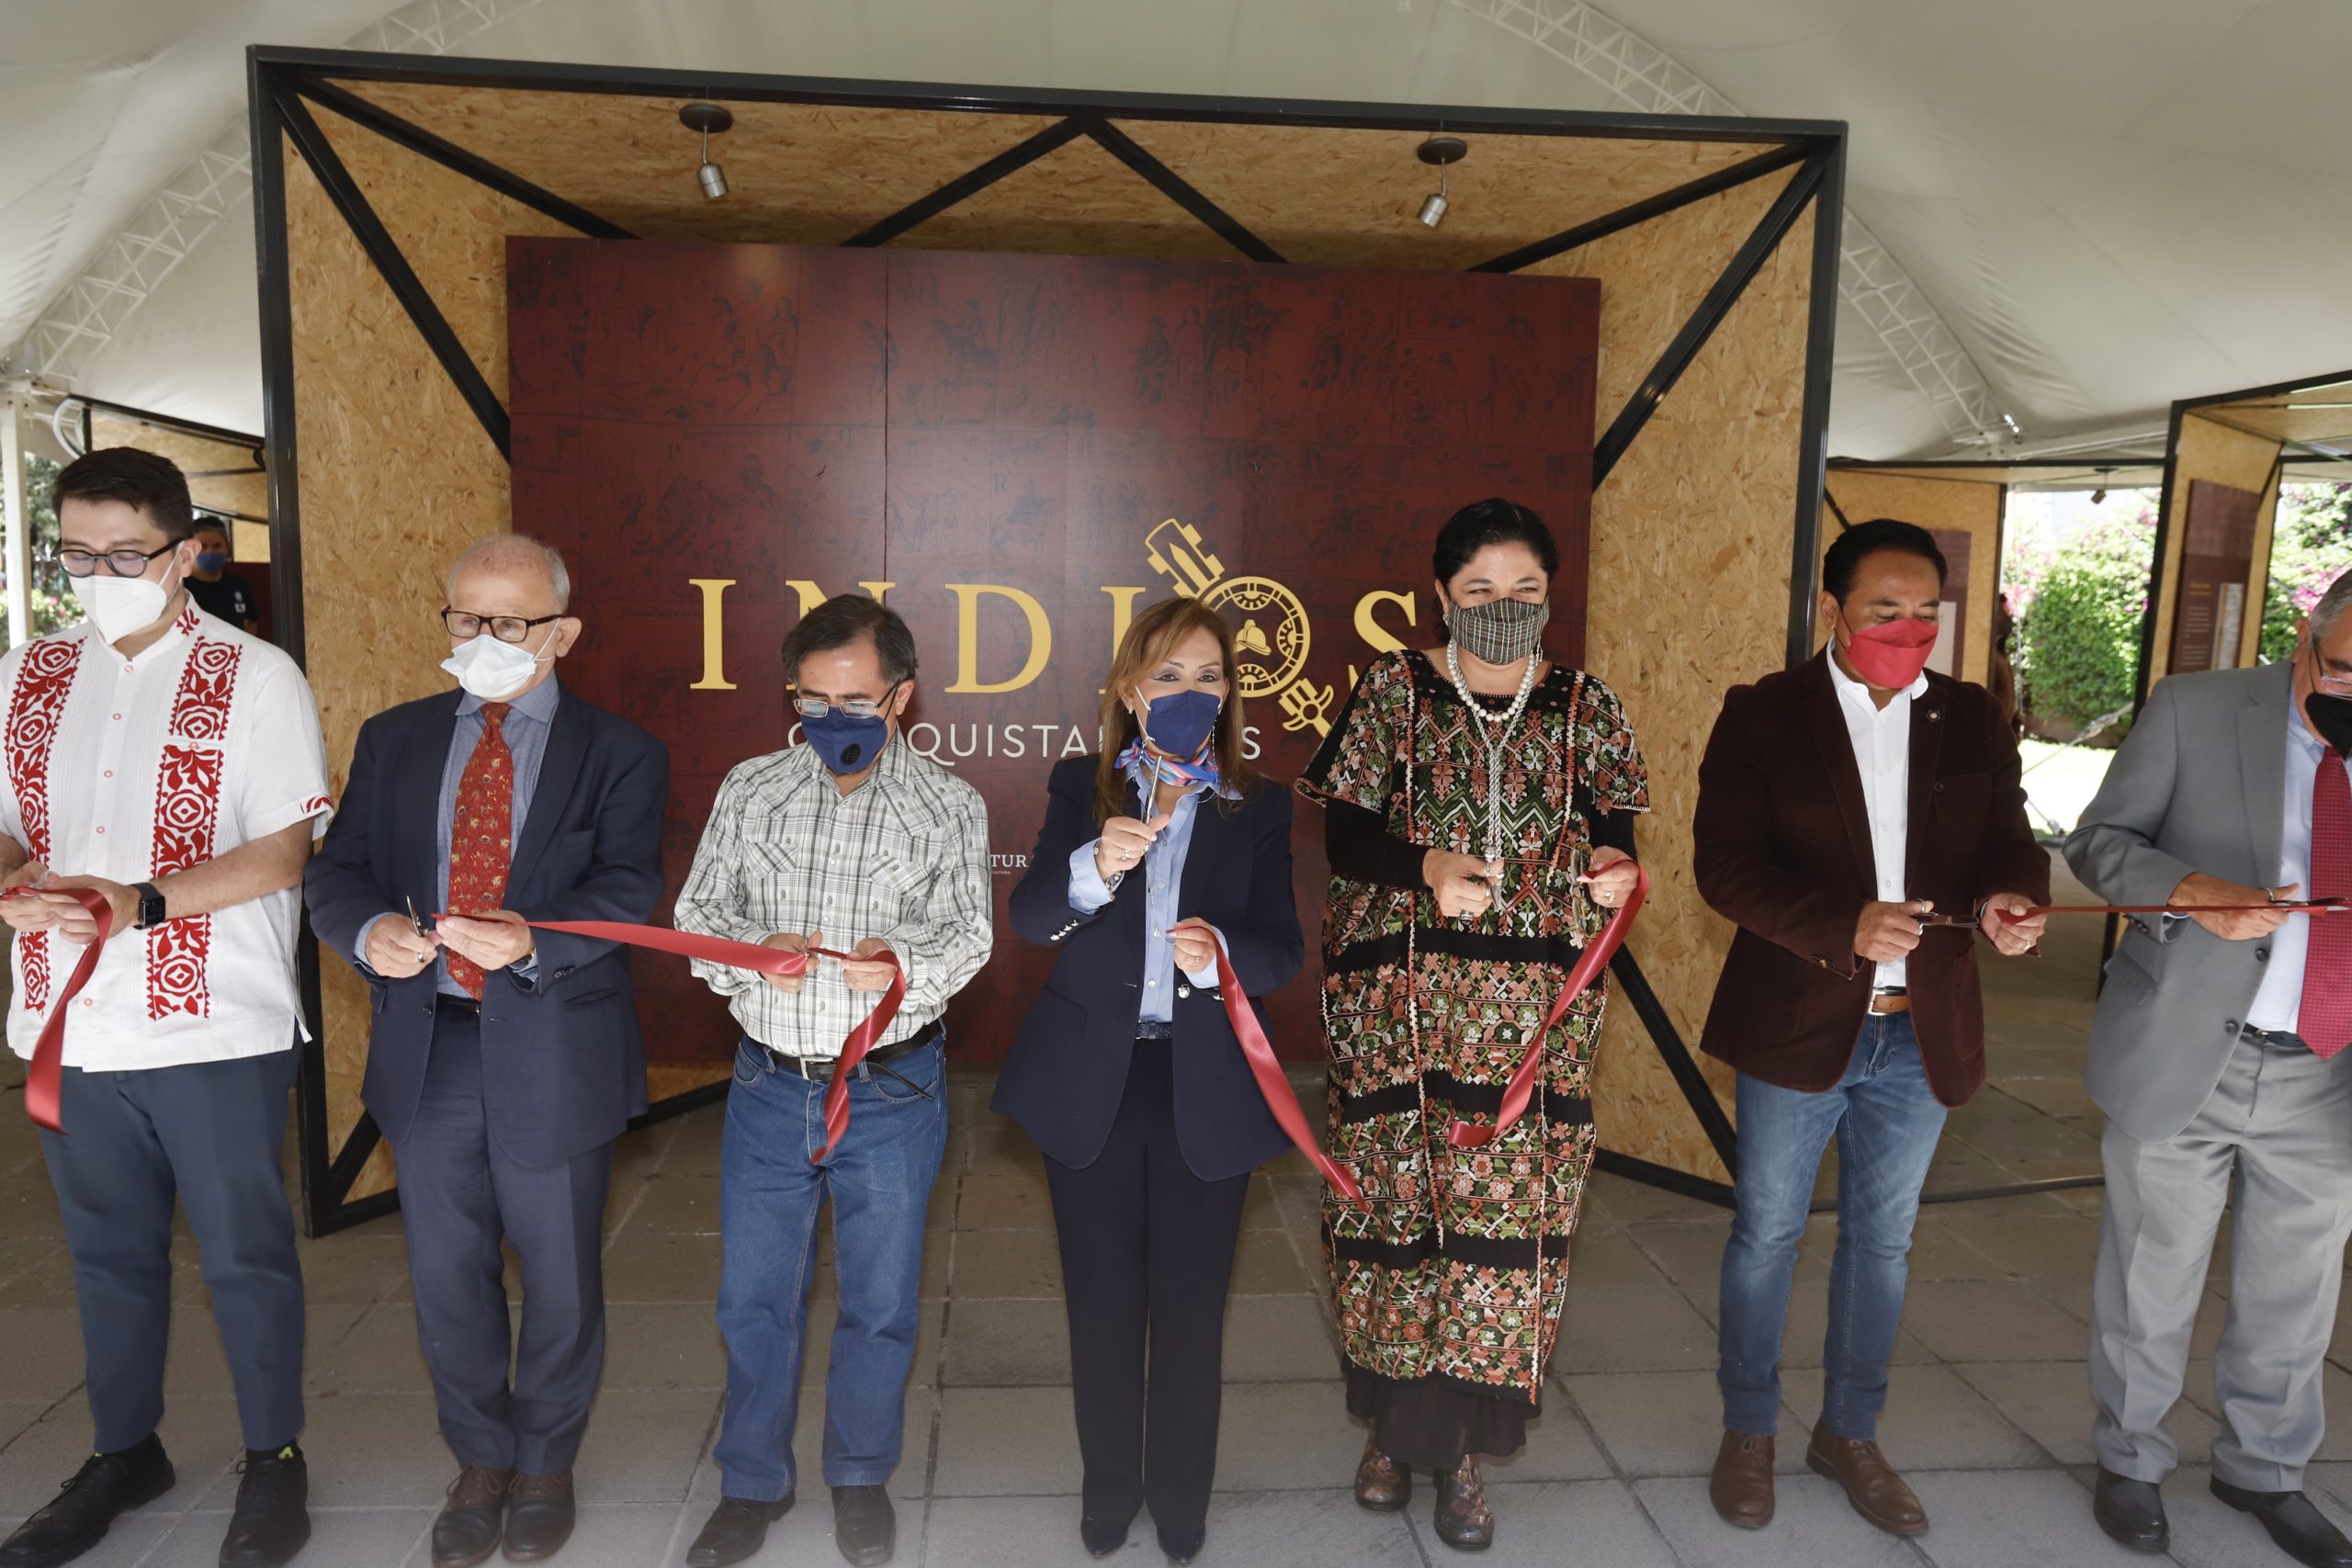 Inauguró LCC exposición «Indios Conquistadores»